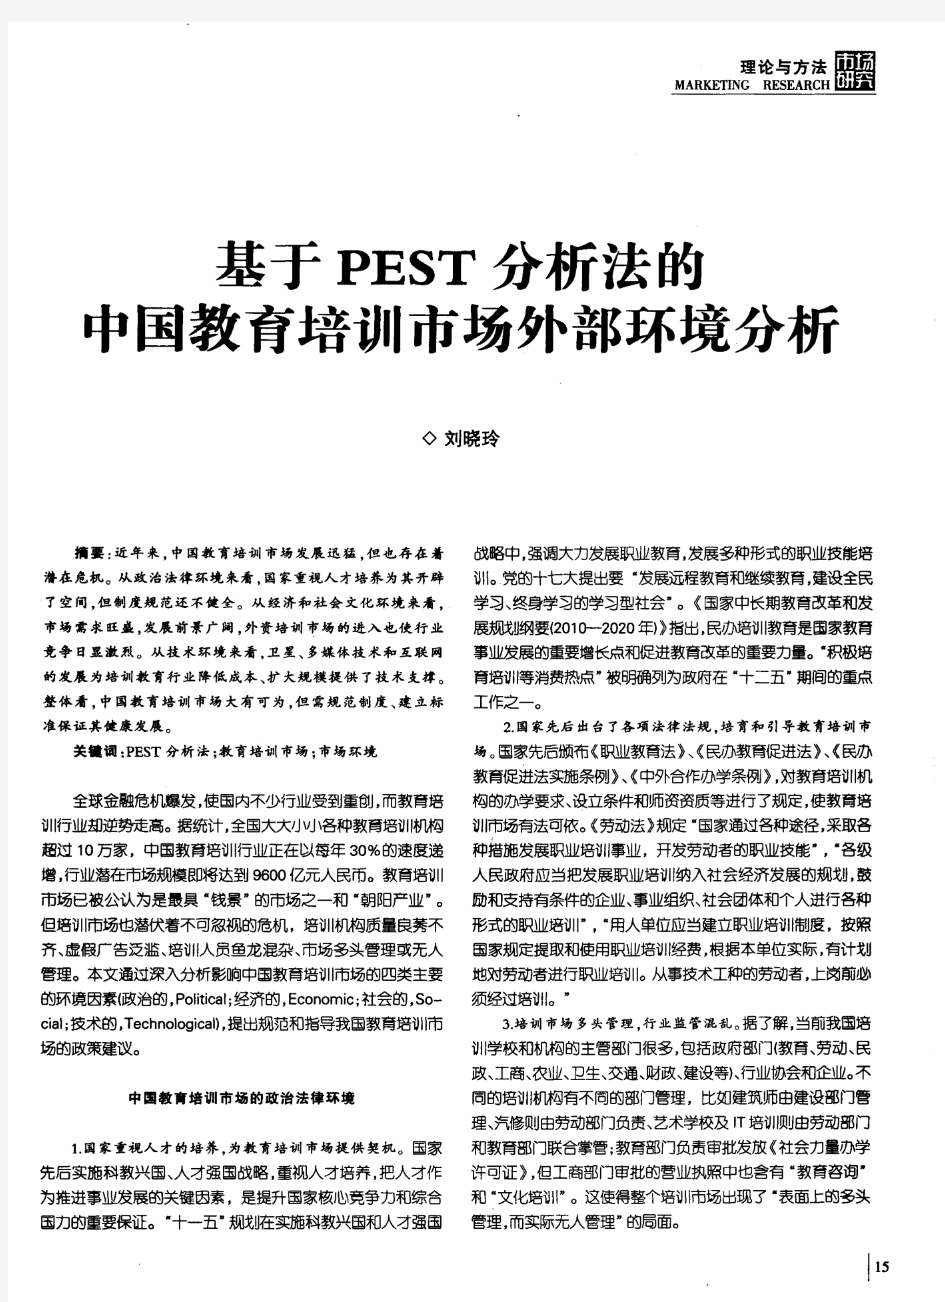 基于PEST分析法的中国教育培训市场外部环境分析